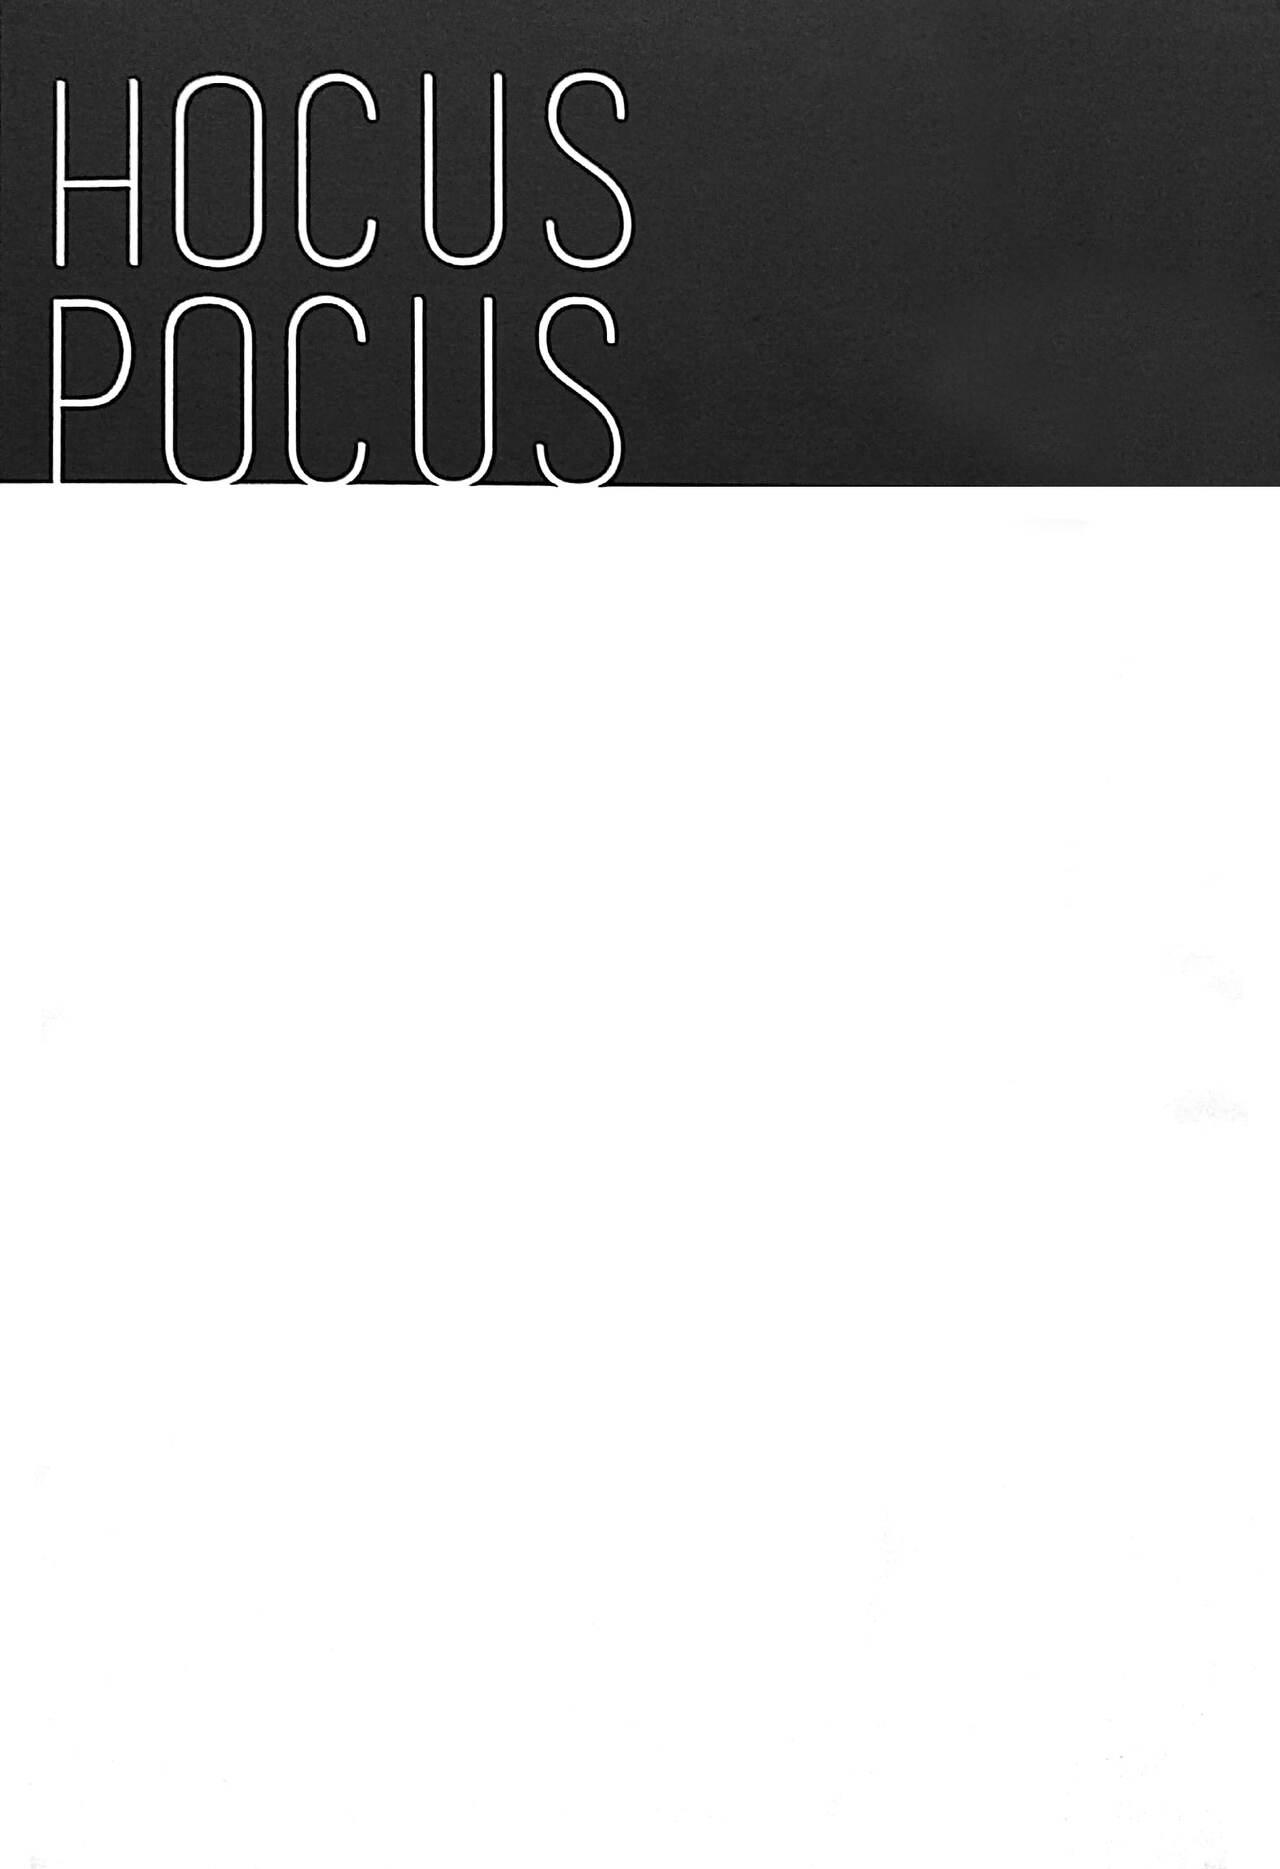 HOCUS POCUS 35